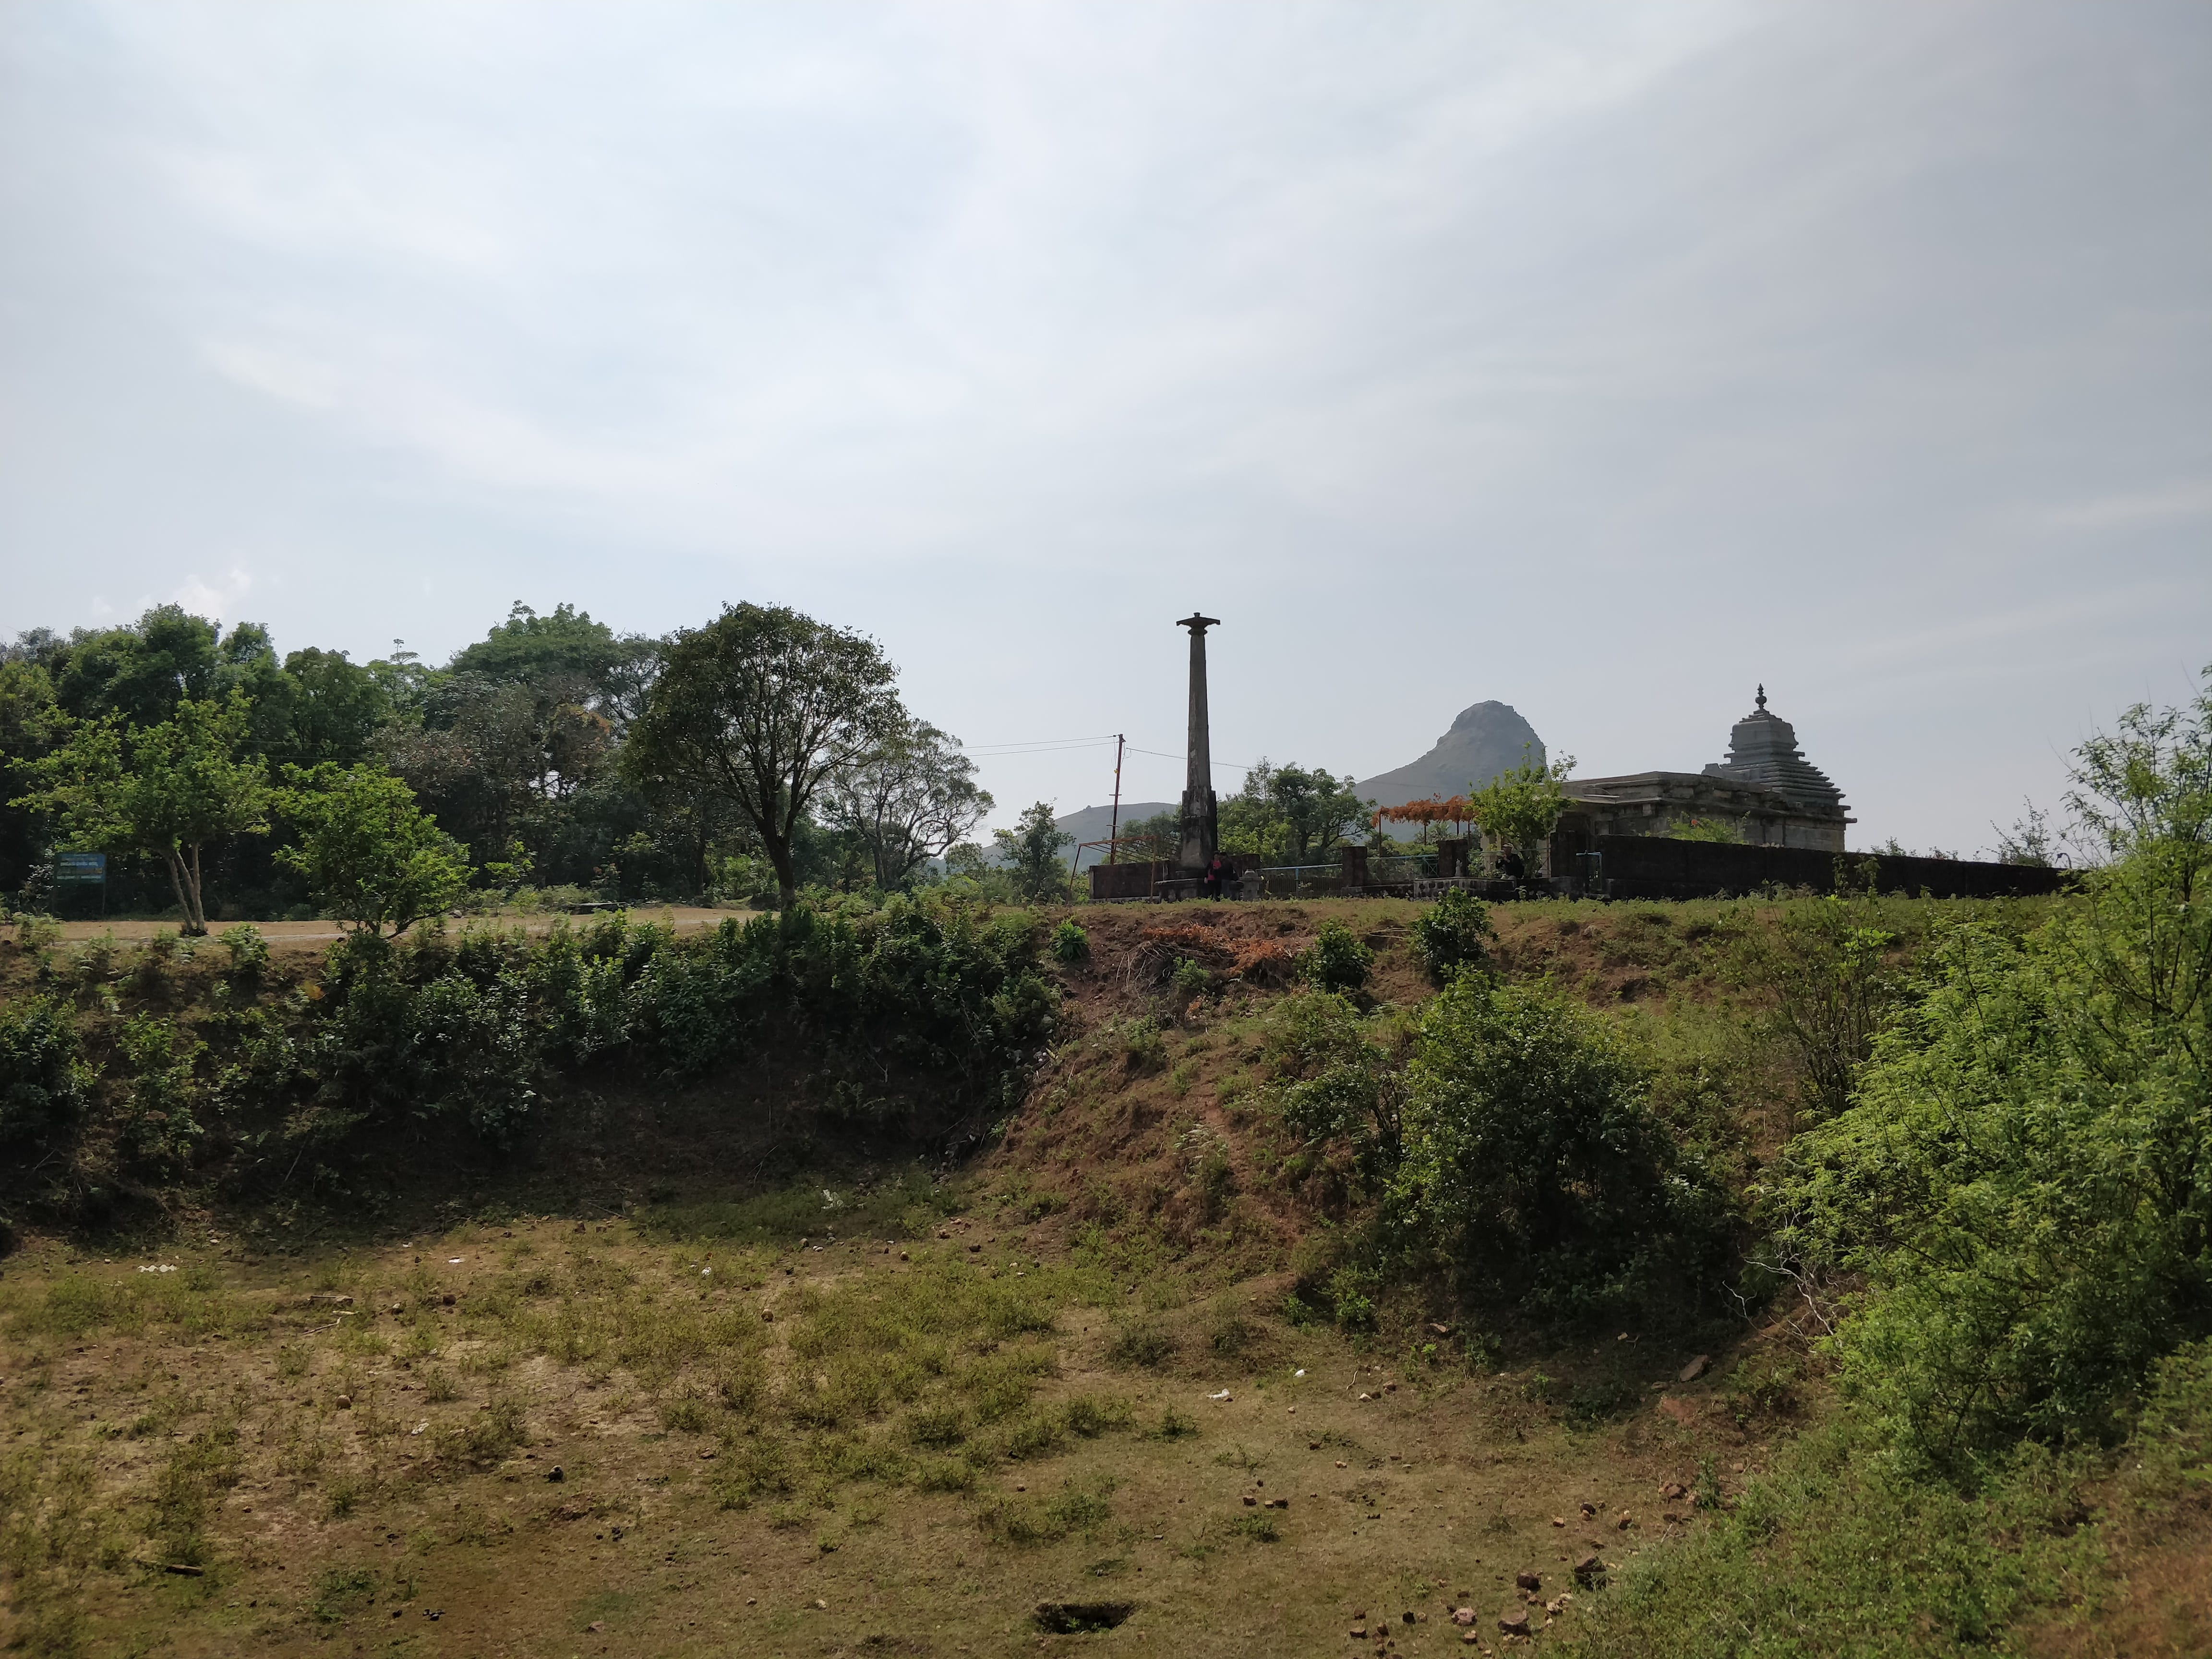 Bhairaweshwara temple and Ethina Bhuja in a single frame